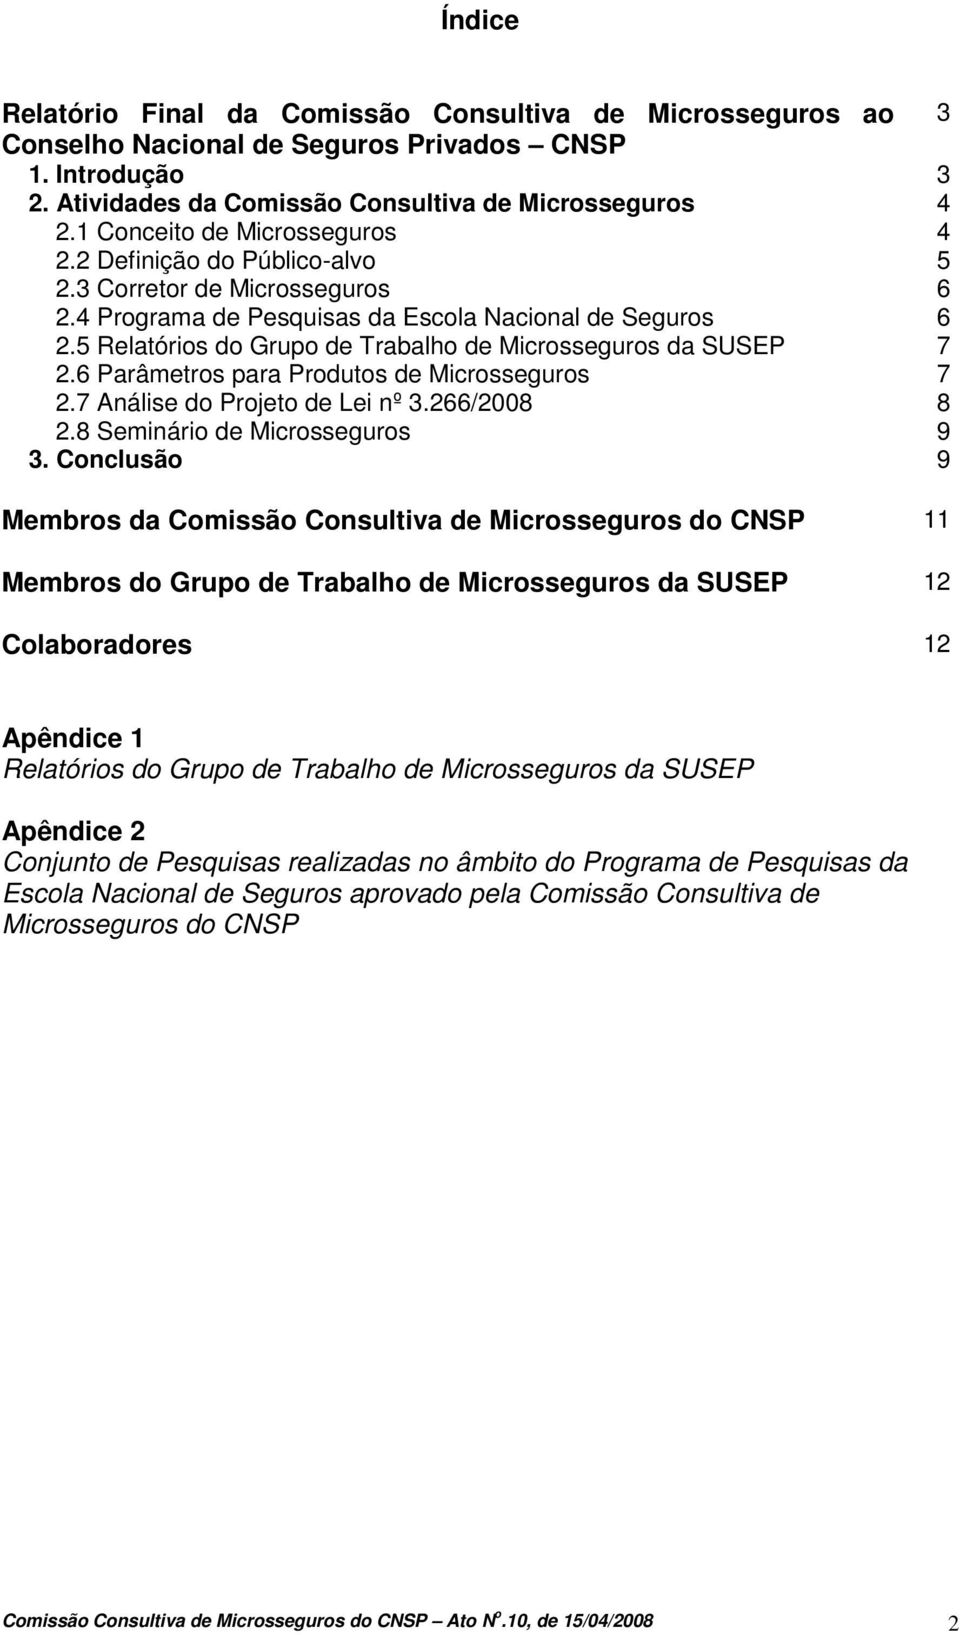 5 Relatórios do Grupo de Trabalho de Microsseguros da SUSEP 7 2.6 Parâmetros para Produtos de Microsseguros 7 2.7 Análise do Projeto de Lei nº 3.266/2008 8 2.8 Seminário de Microsseguros 9 3.